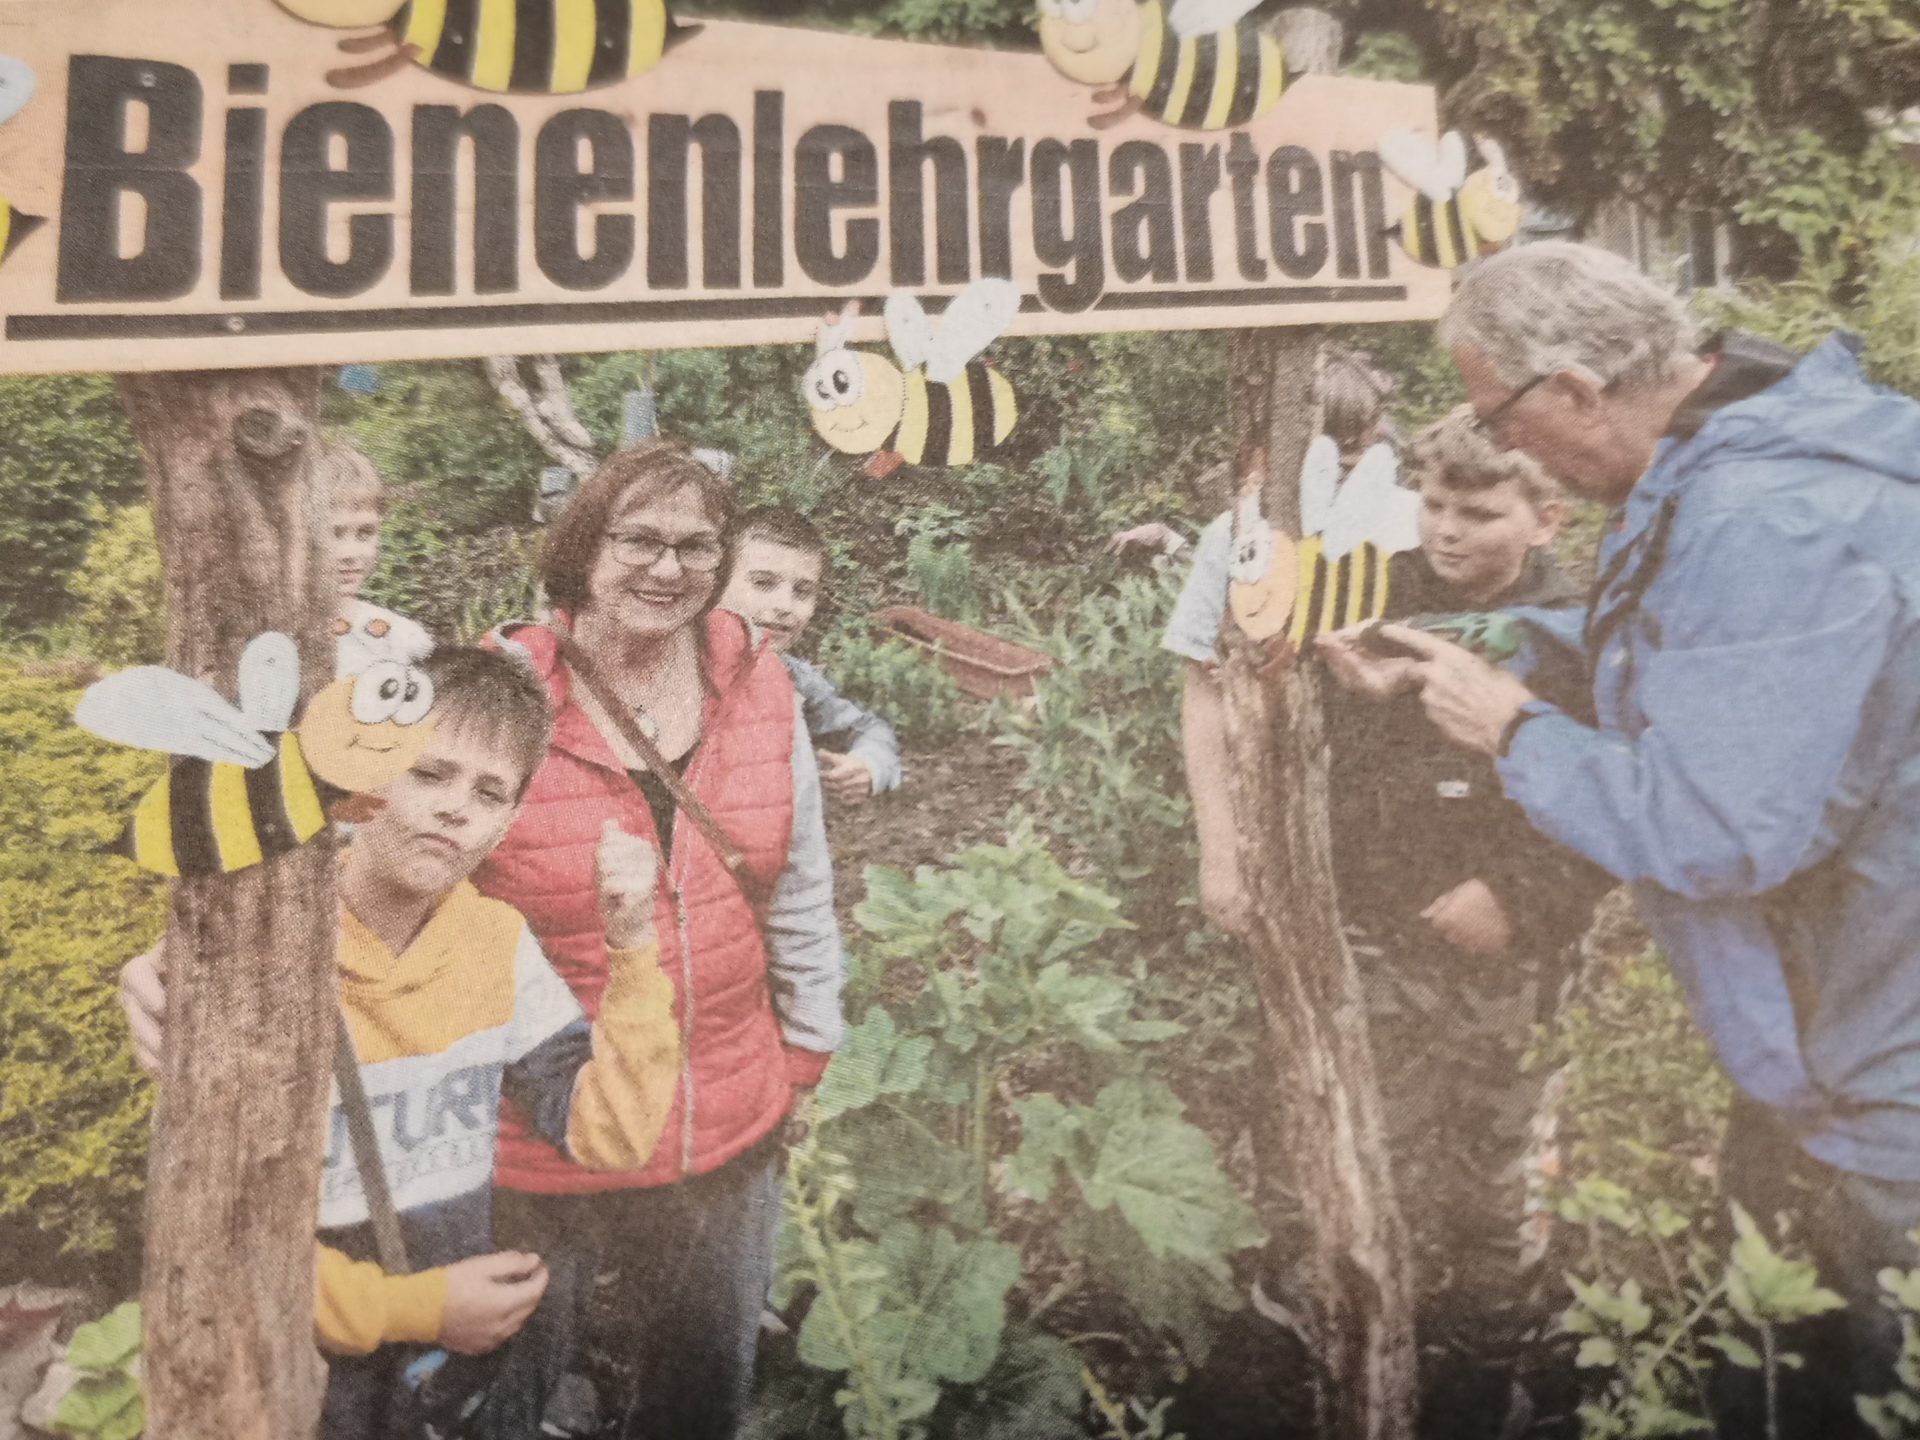 Bienenlehrgarten in Dömitz